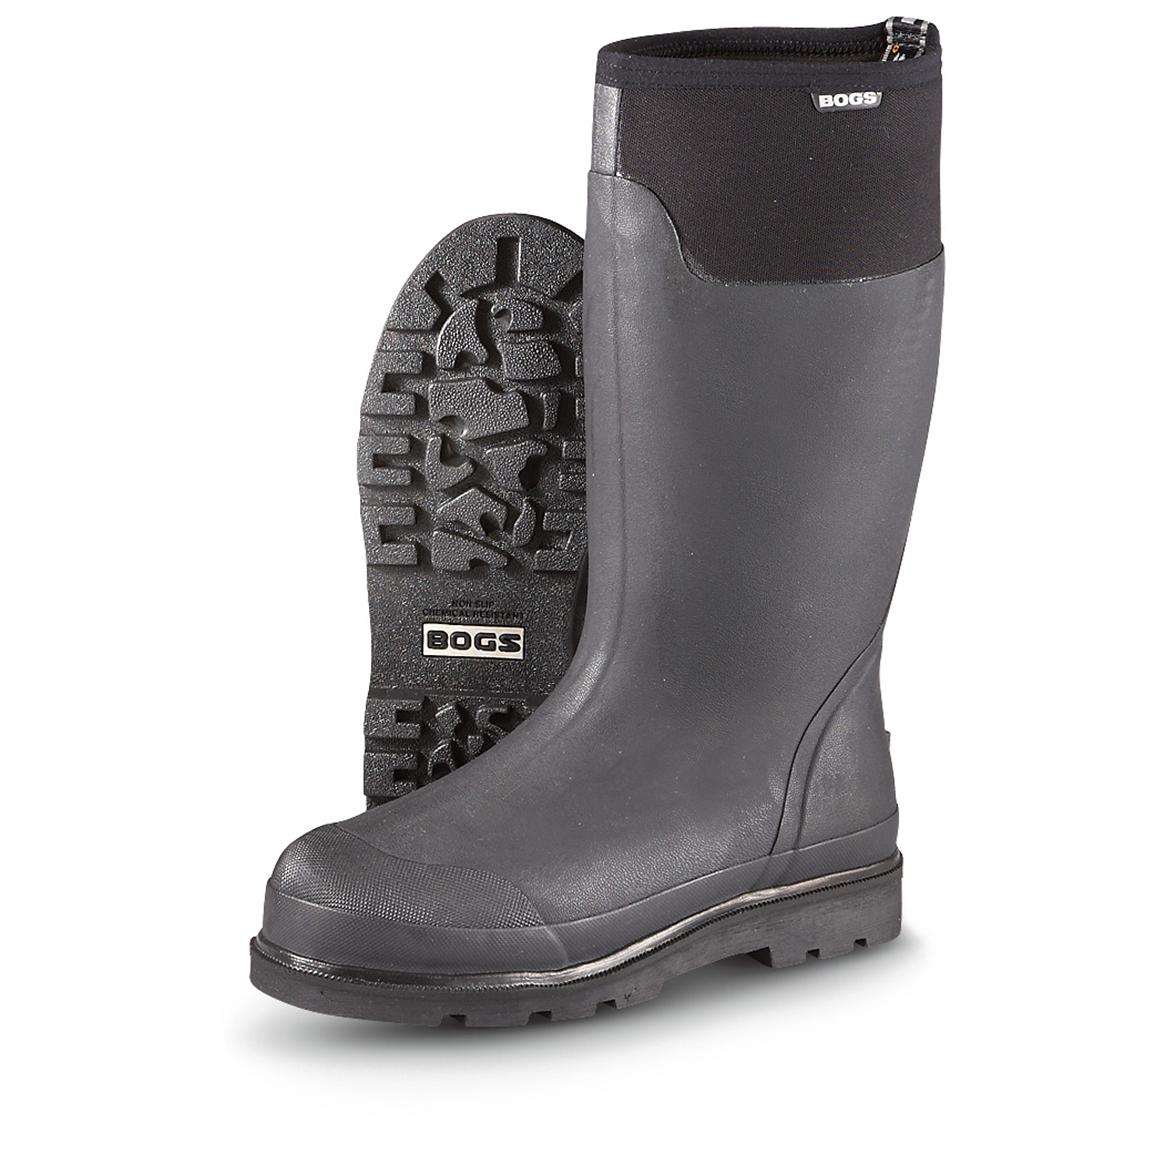 bogs men's rain boots